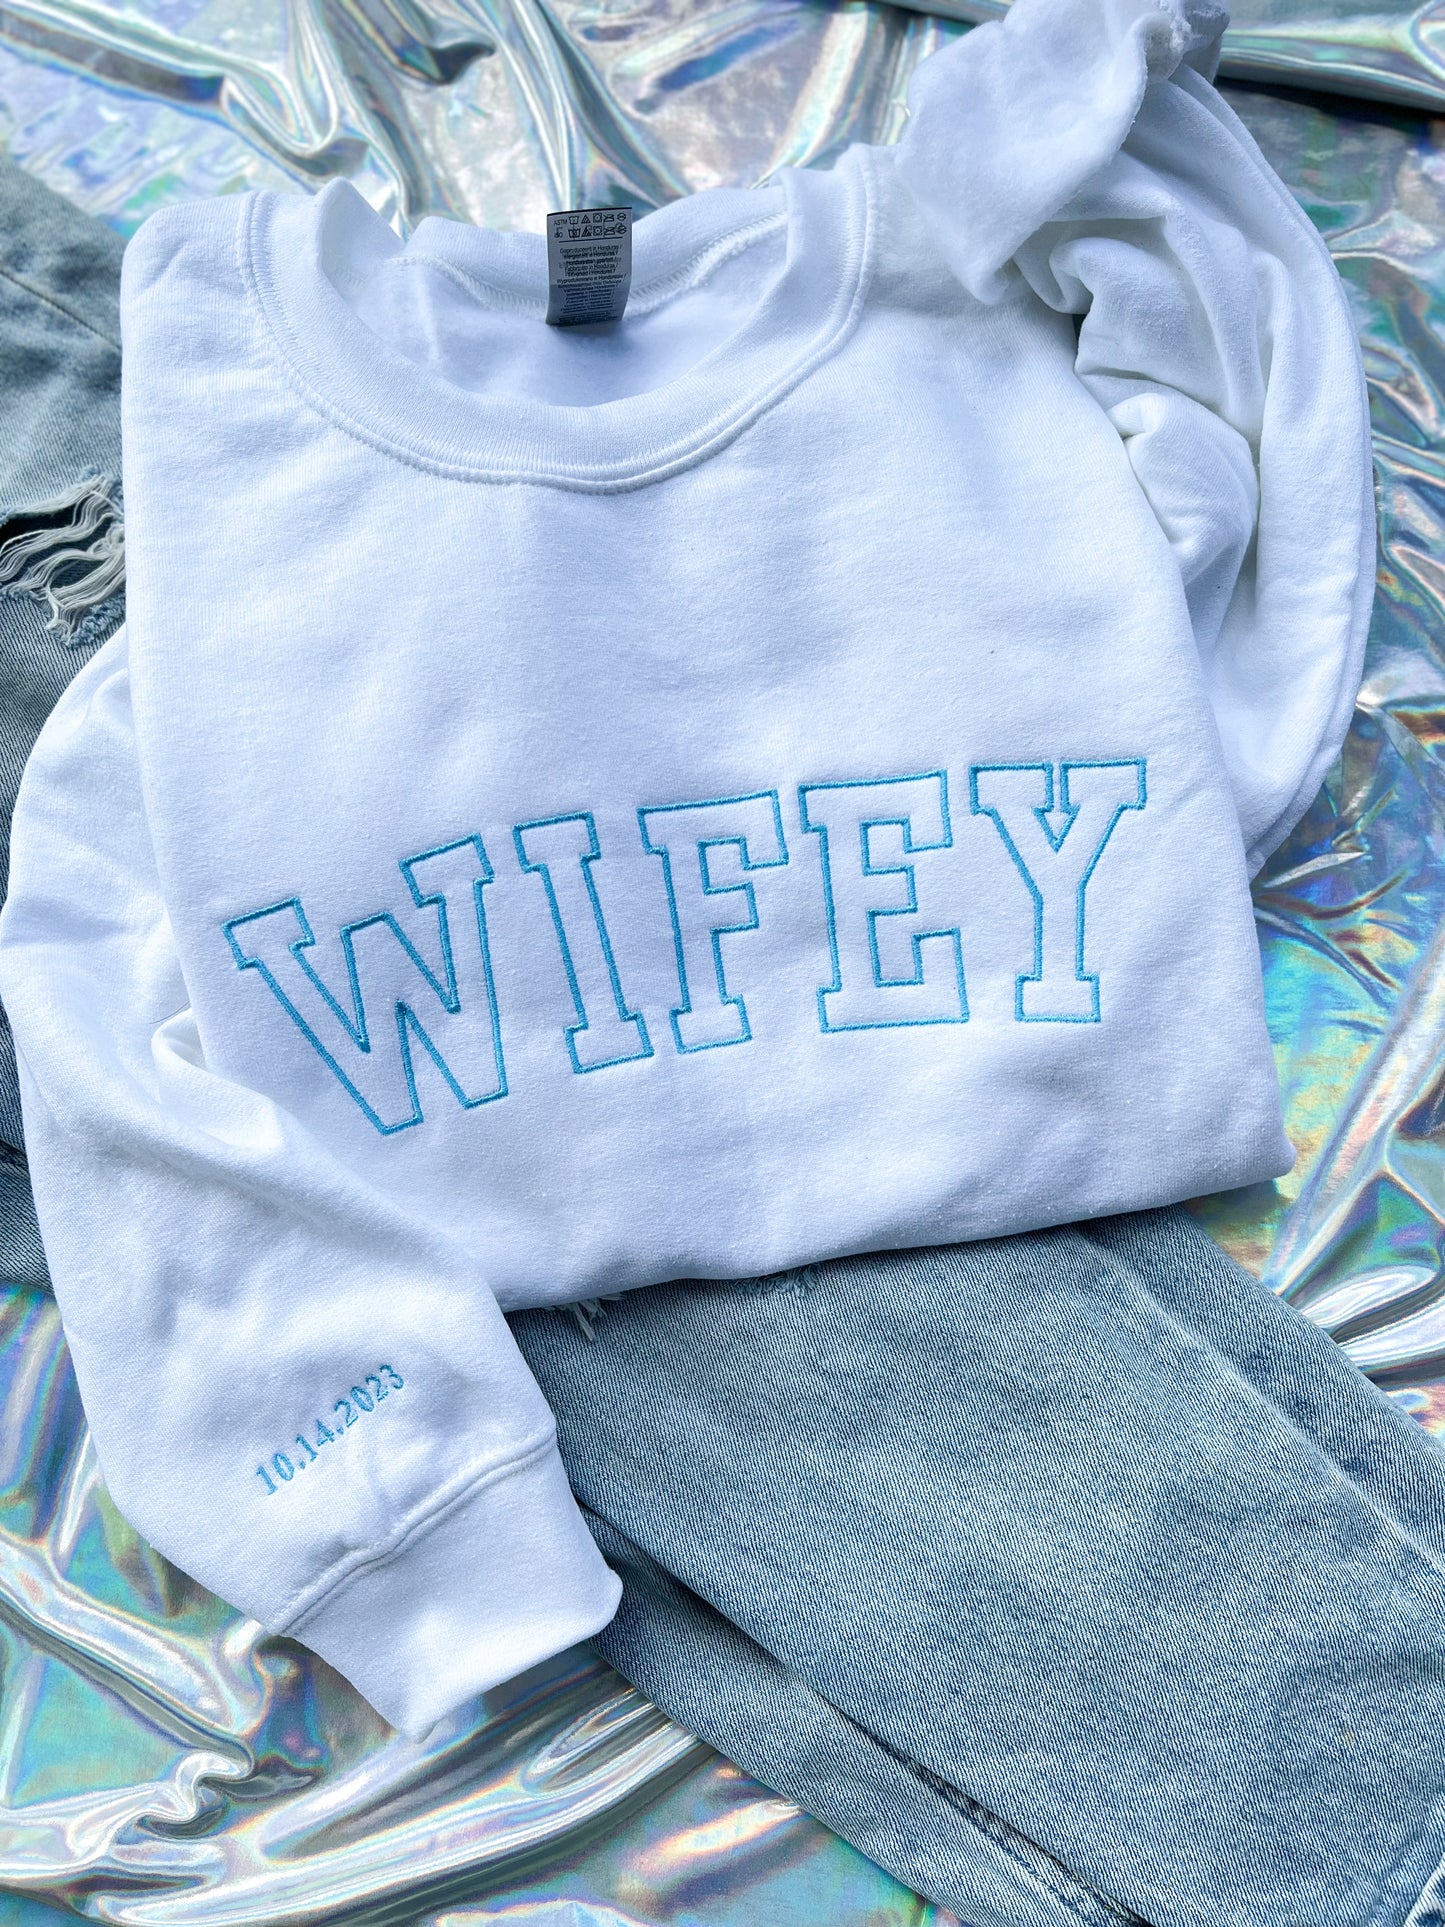 WIFEY embroidered Sweatshirt